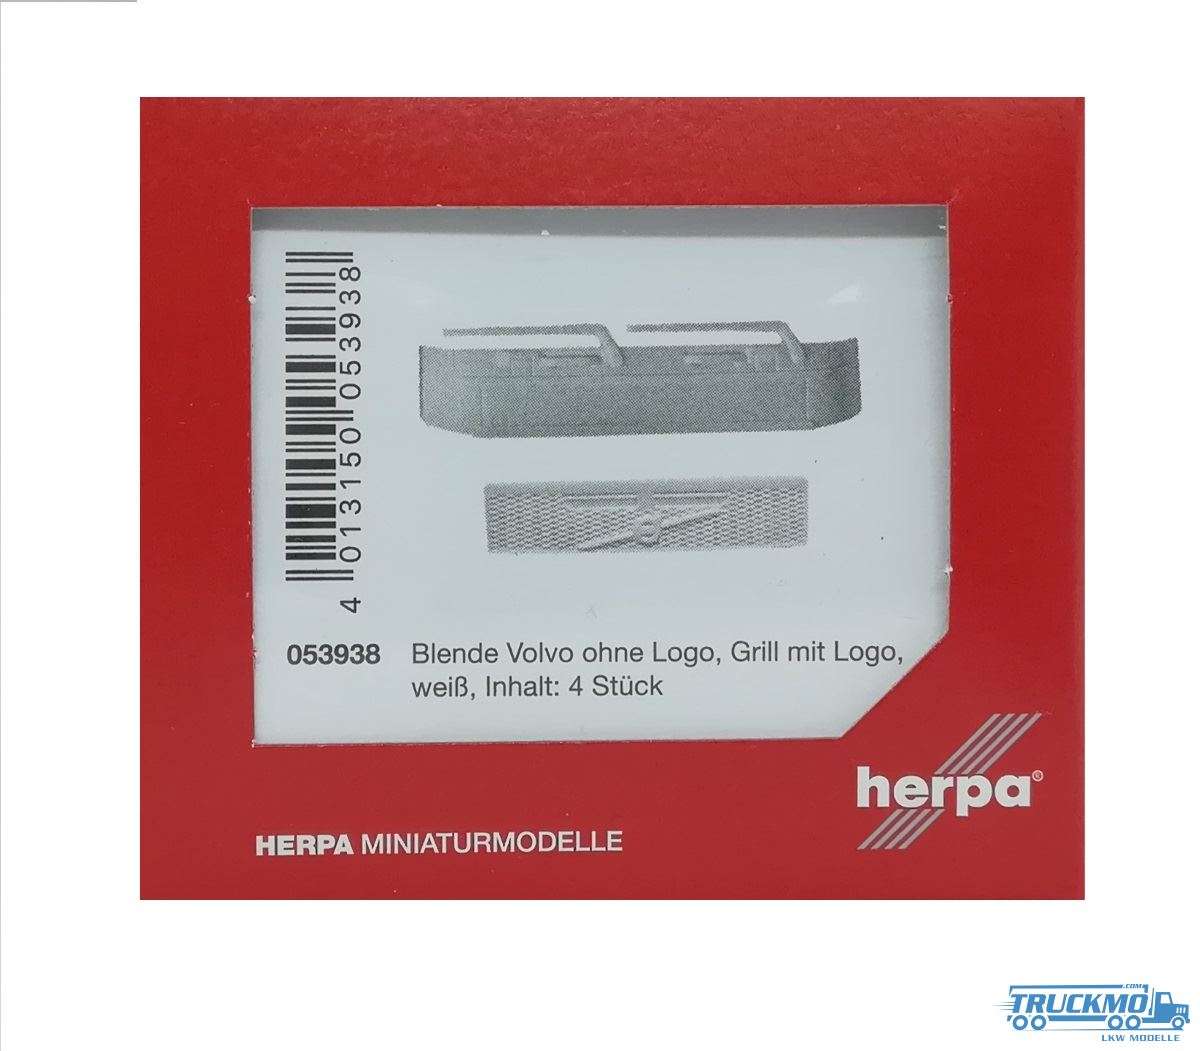 Herpa Blenden Volvo ohne Logo, Grill mit Logo weiß (Inhalt 4 Stück) 053938